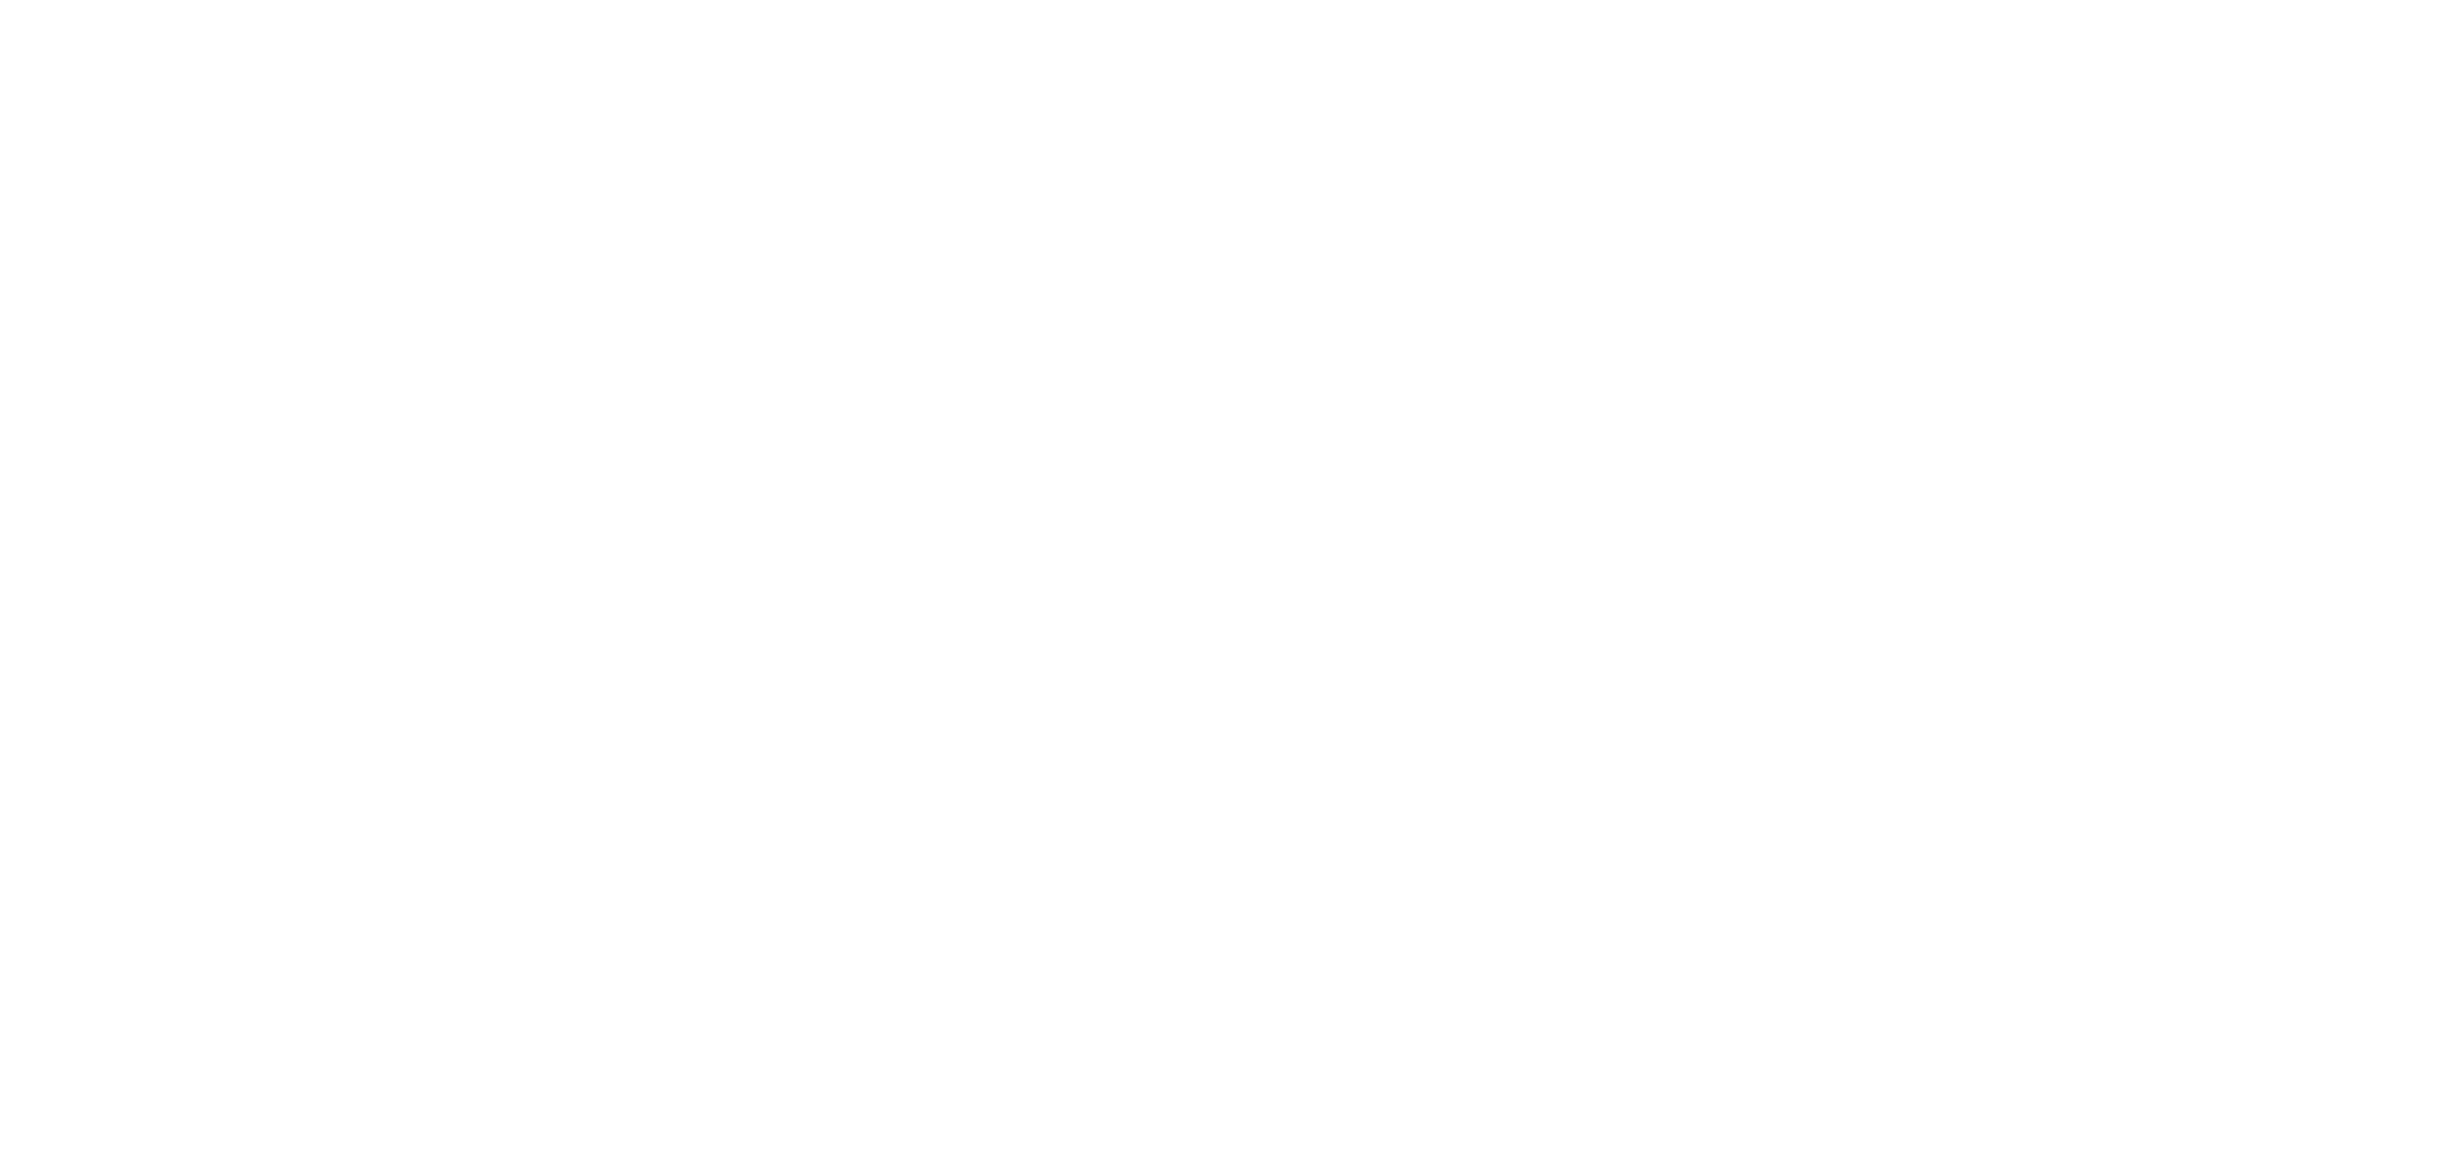 CK Productions | Audium | Audiovisuele producties en verhuur op broadcastmarkt Ranst